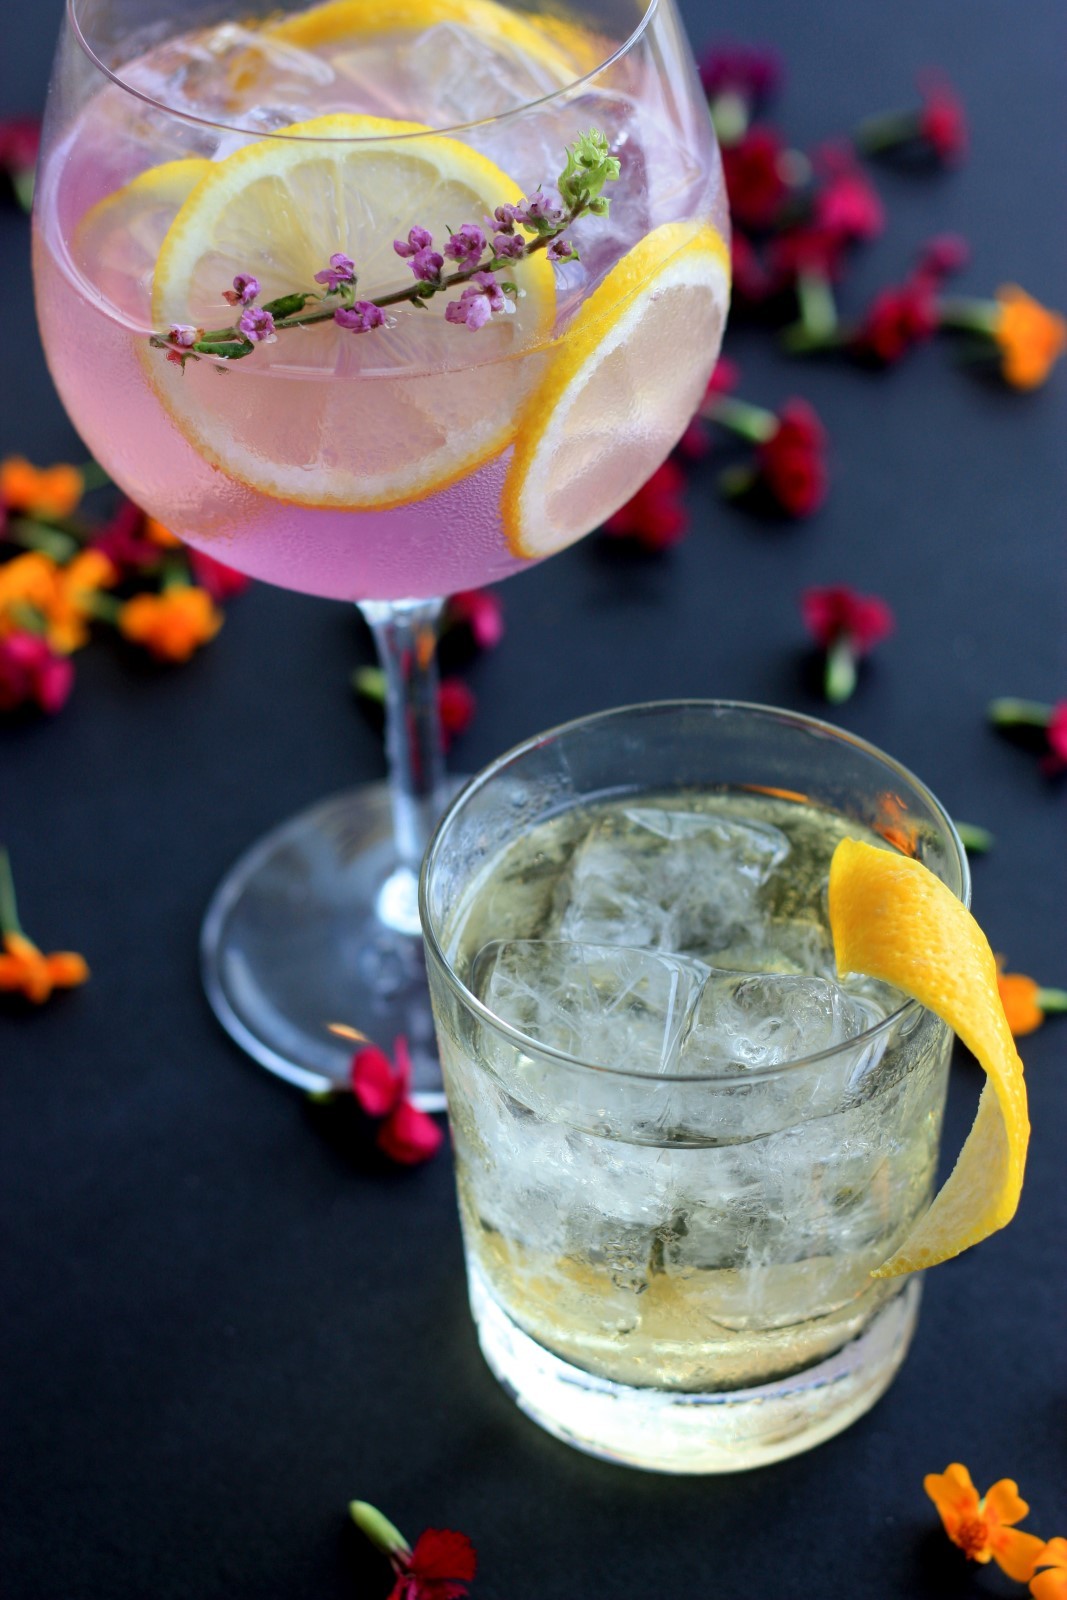 Δύο ποτήρια με υγρό και παγάκια γεμάτα από φέτες λεμονιού και βρώσιμα λουλούδια